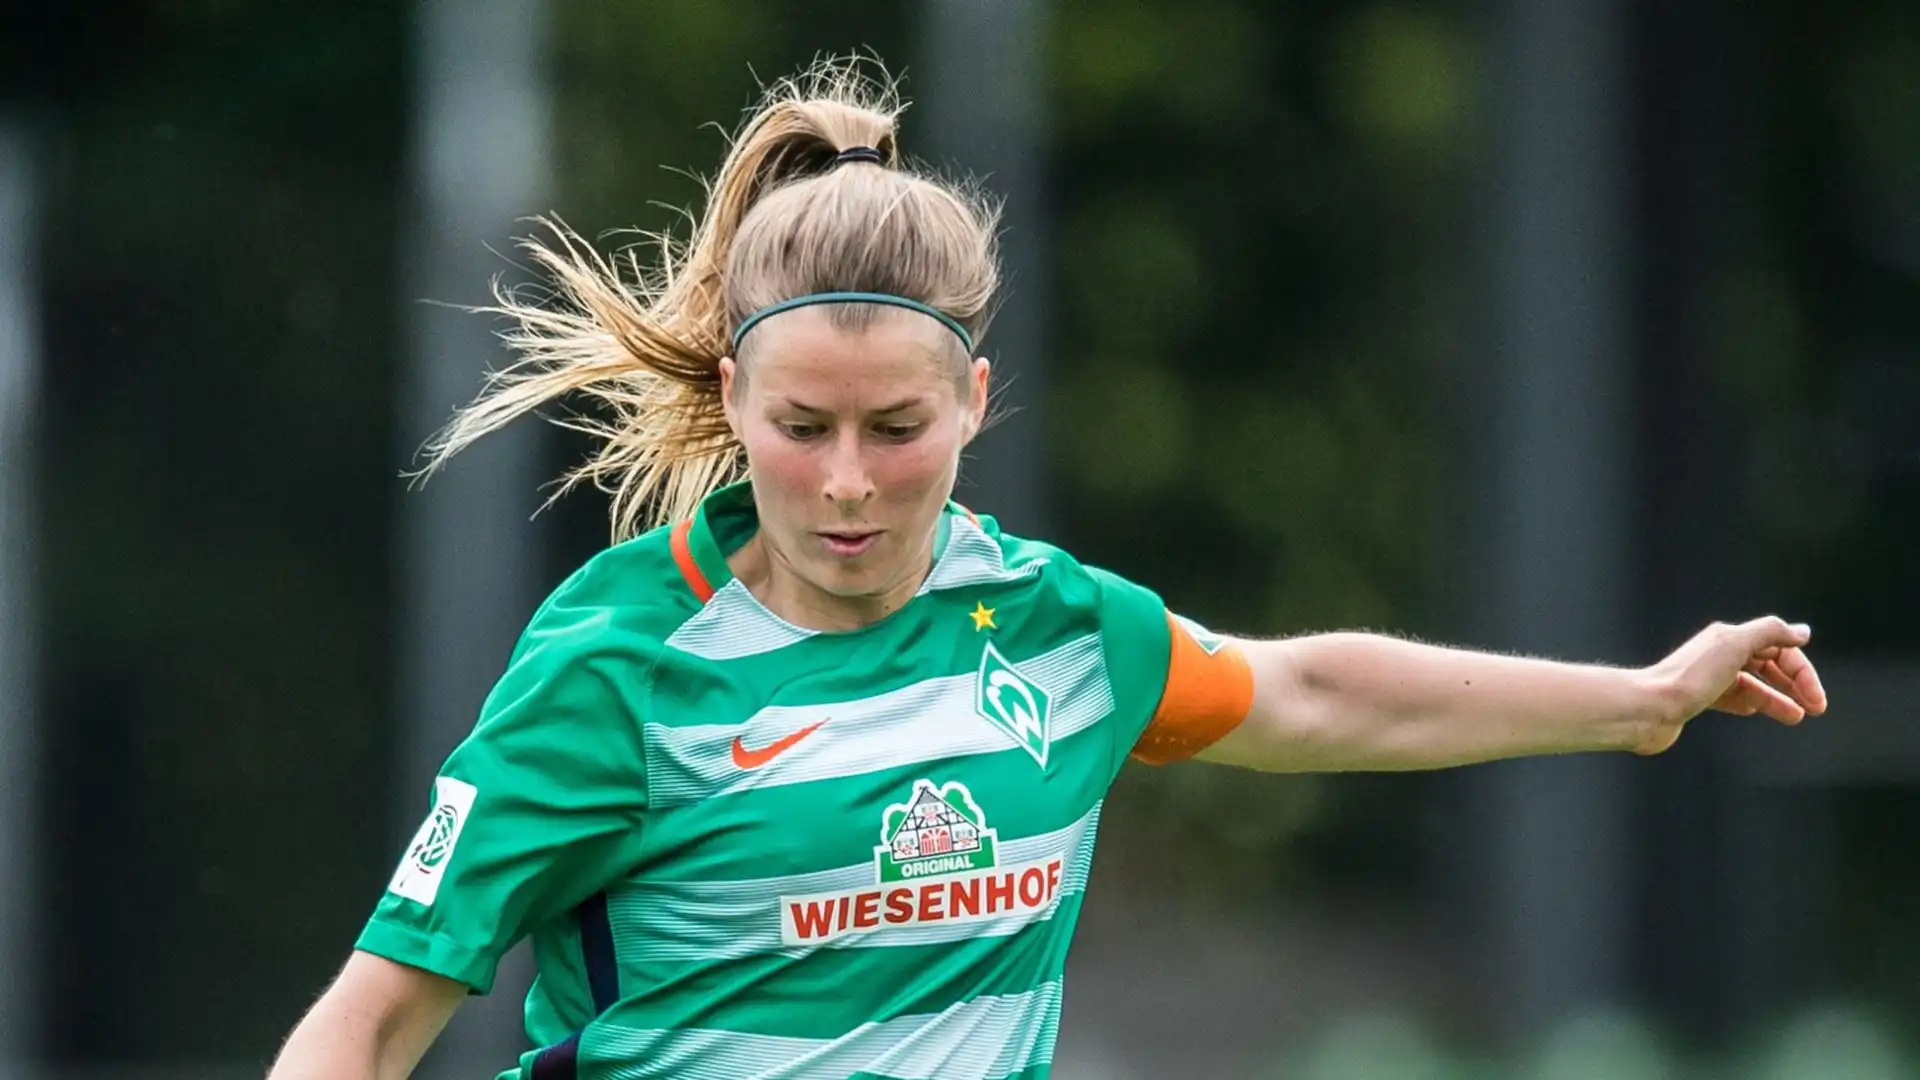 Negli ultimi anni è stata vice-allenatrice di varie squadre nazionali giovanili femminili. Al Werder Brema ha allenato la squadra maschile Under 15